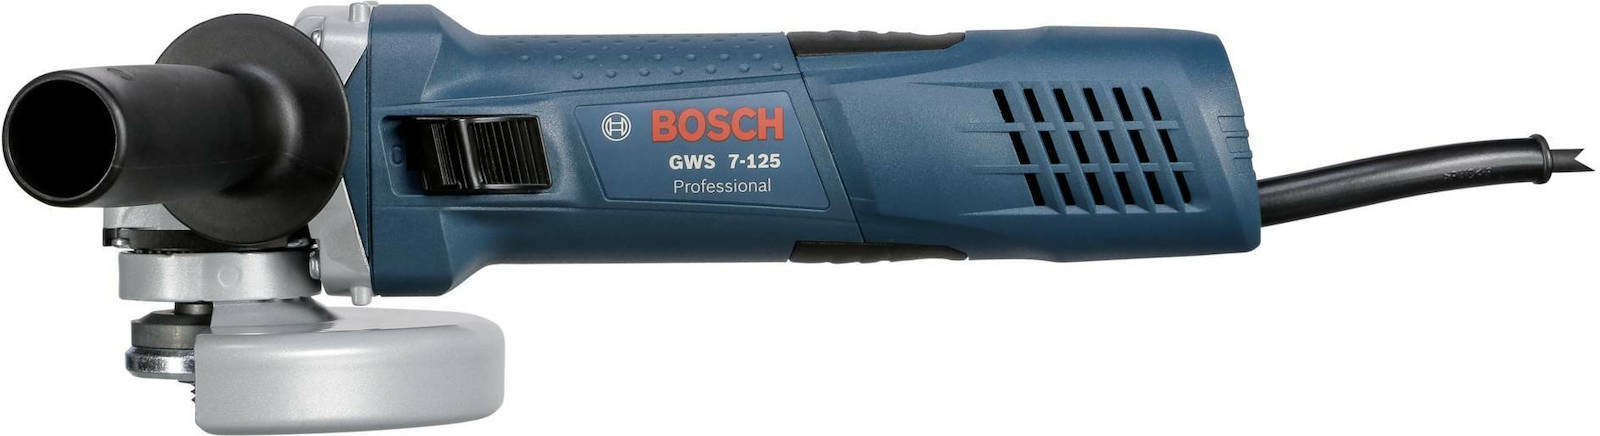 Meuleuse dangle Bosch Professional GWS 7-125 0601388108 125 mm 720 W 230 V  3165140823715